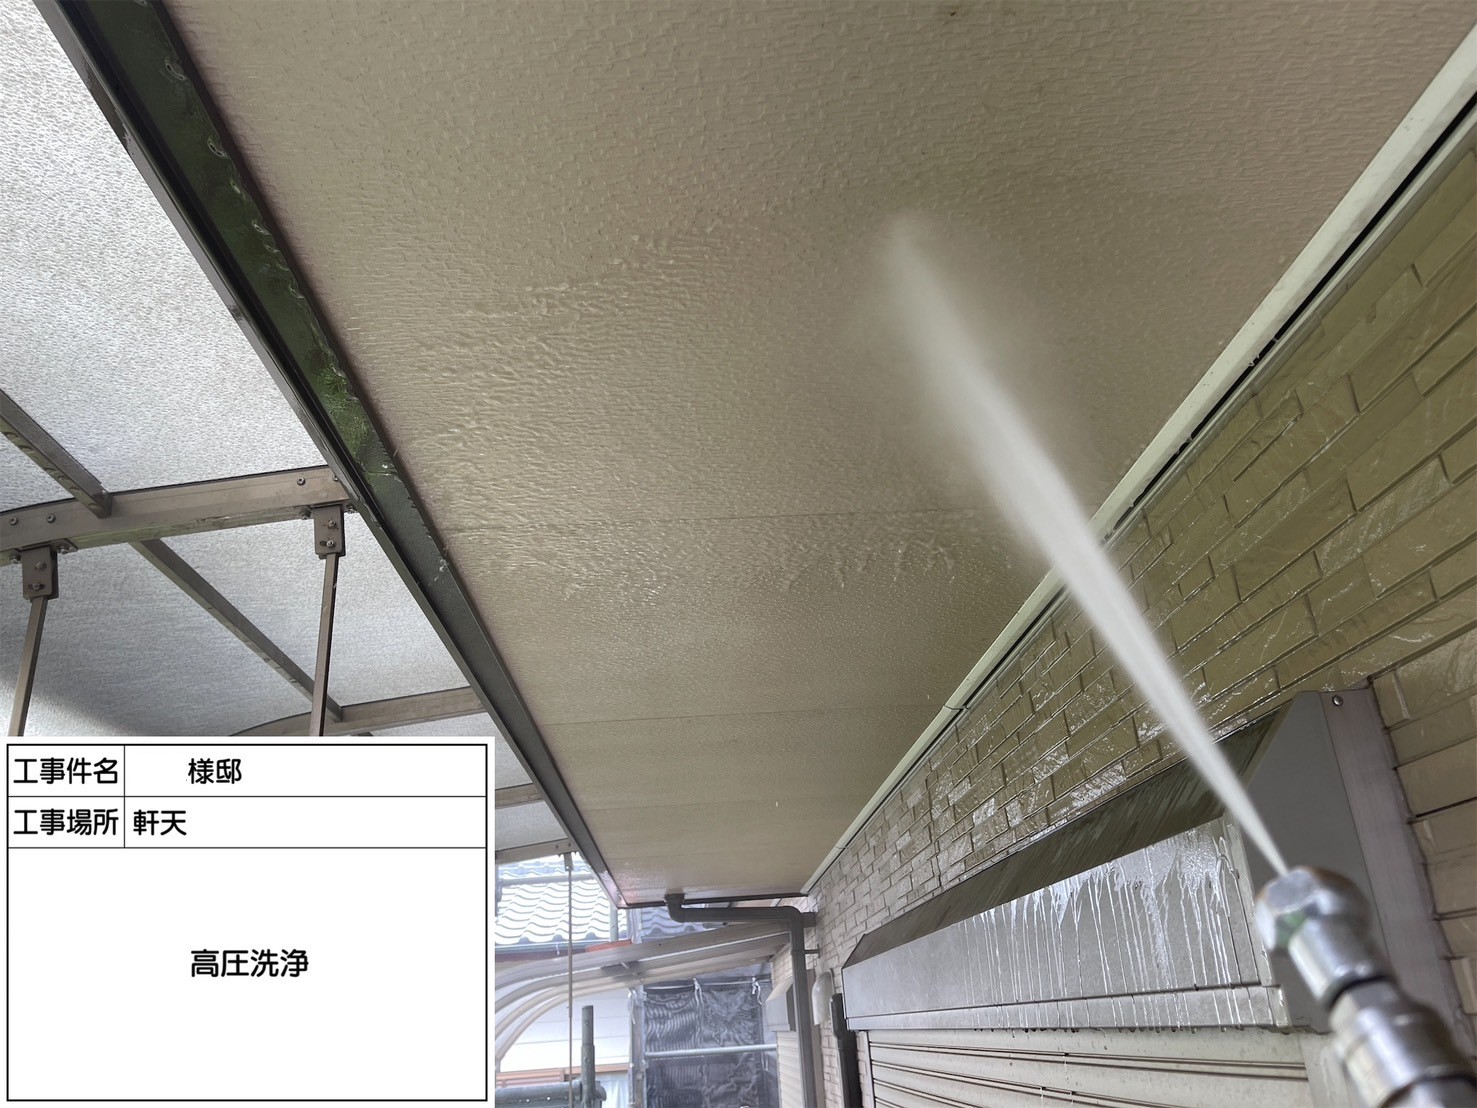 福岡県大野城市南ヶ丘のS様邸で屋根にイーサンクの遮熱エシカルプロクールSI、外壁にプレミアムペイントのピュアピュアシリコンを使用してお住まいの耐久性を向上させる塗り替え工事を行っています。5/30着工です。【HPより】